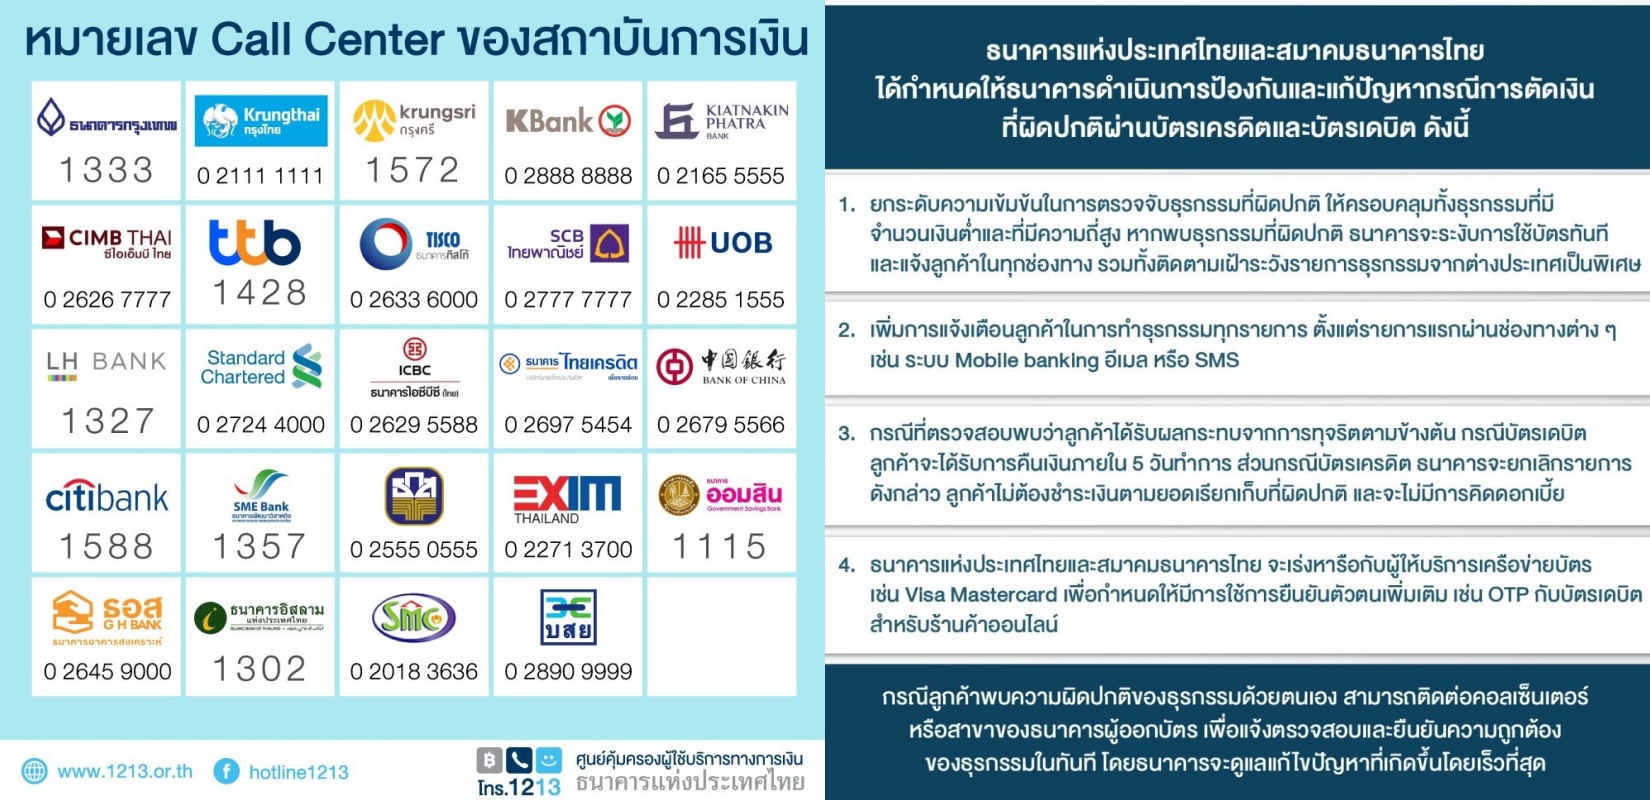 ธปท. และสมาคมธนาคารไทย ชี้แจงความคืบหน้า กรณีการตัดเงินที่ผิดปกติผ่านบัตรเครดิตและบัตรเดบิต